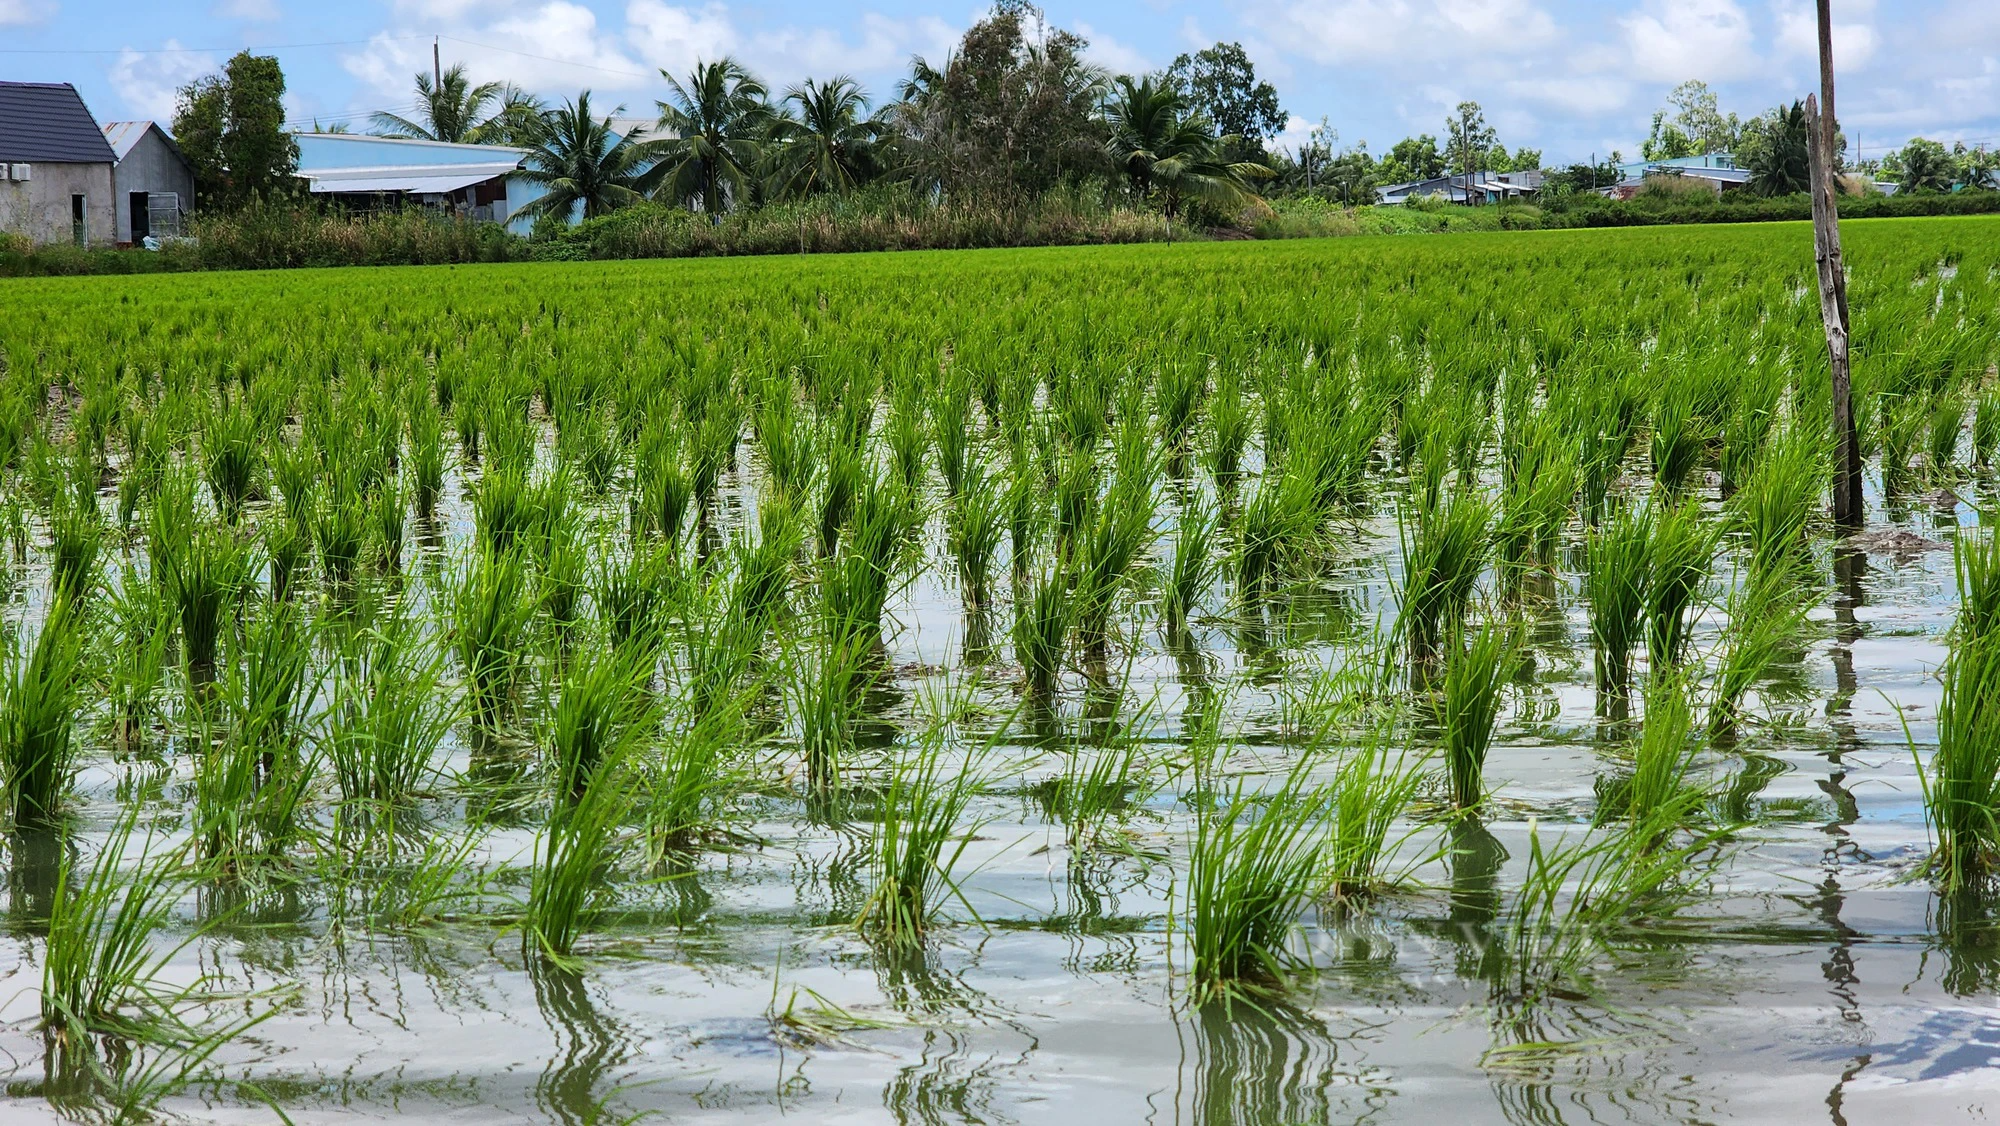 Đi tìm một chữ “xanh” trong nông nghiệp: Mô hình lúa tôm, hình mẫu của nông nghiệp sinh thái, đa giá trị - Ảnh 2.